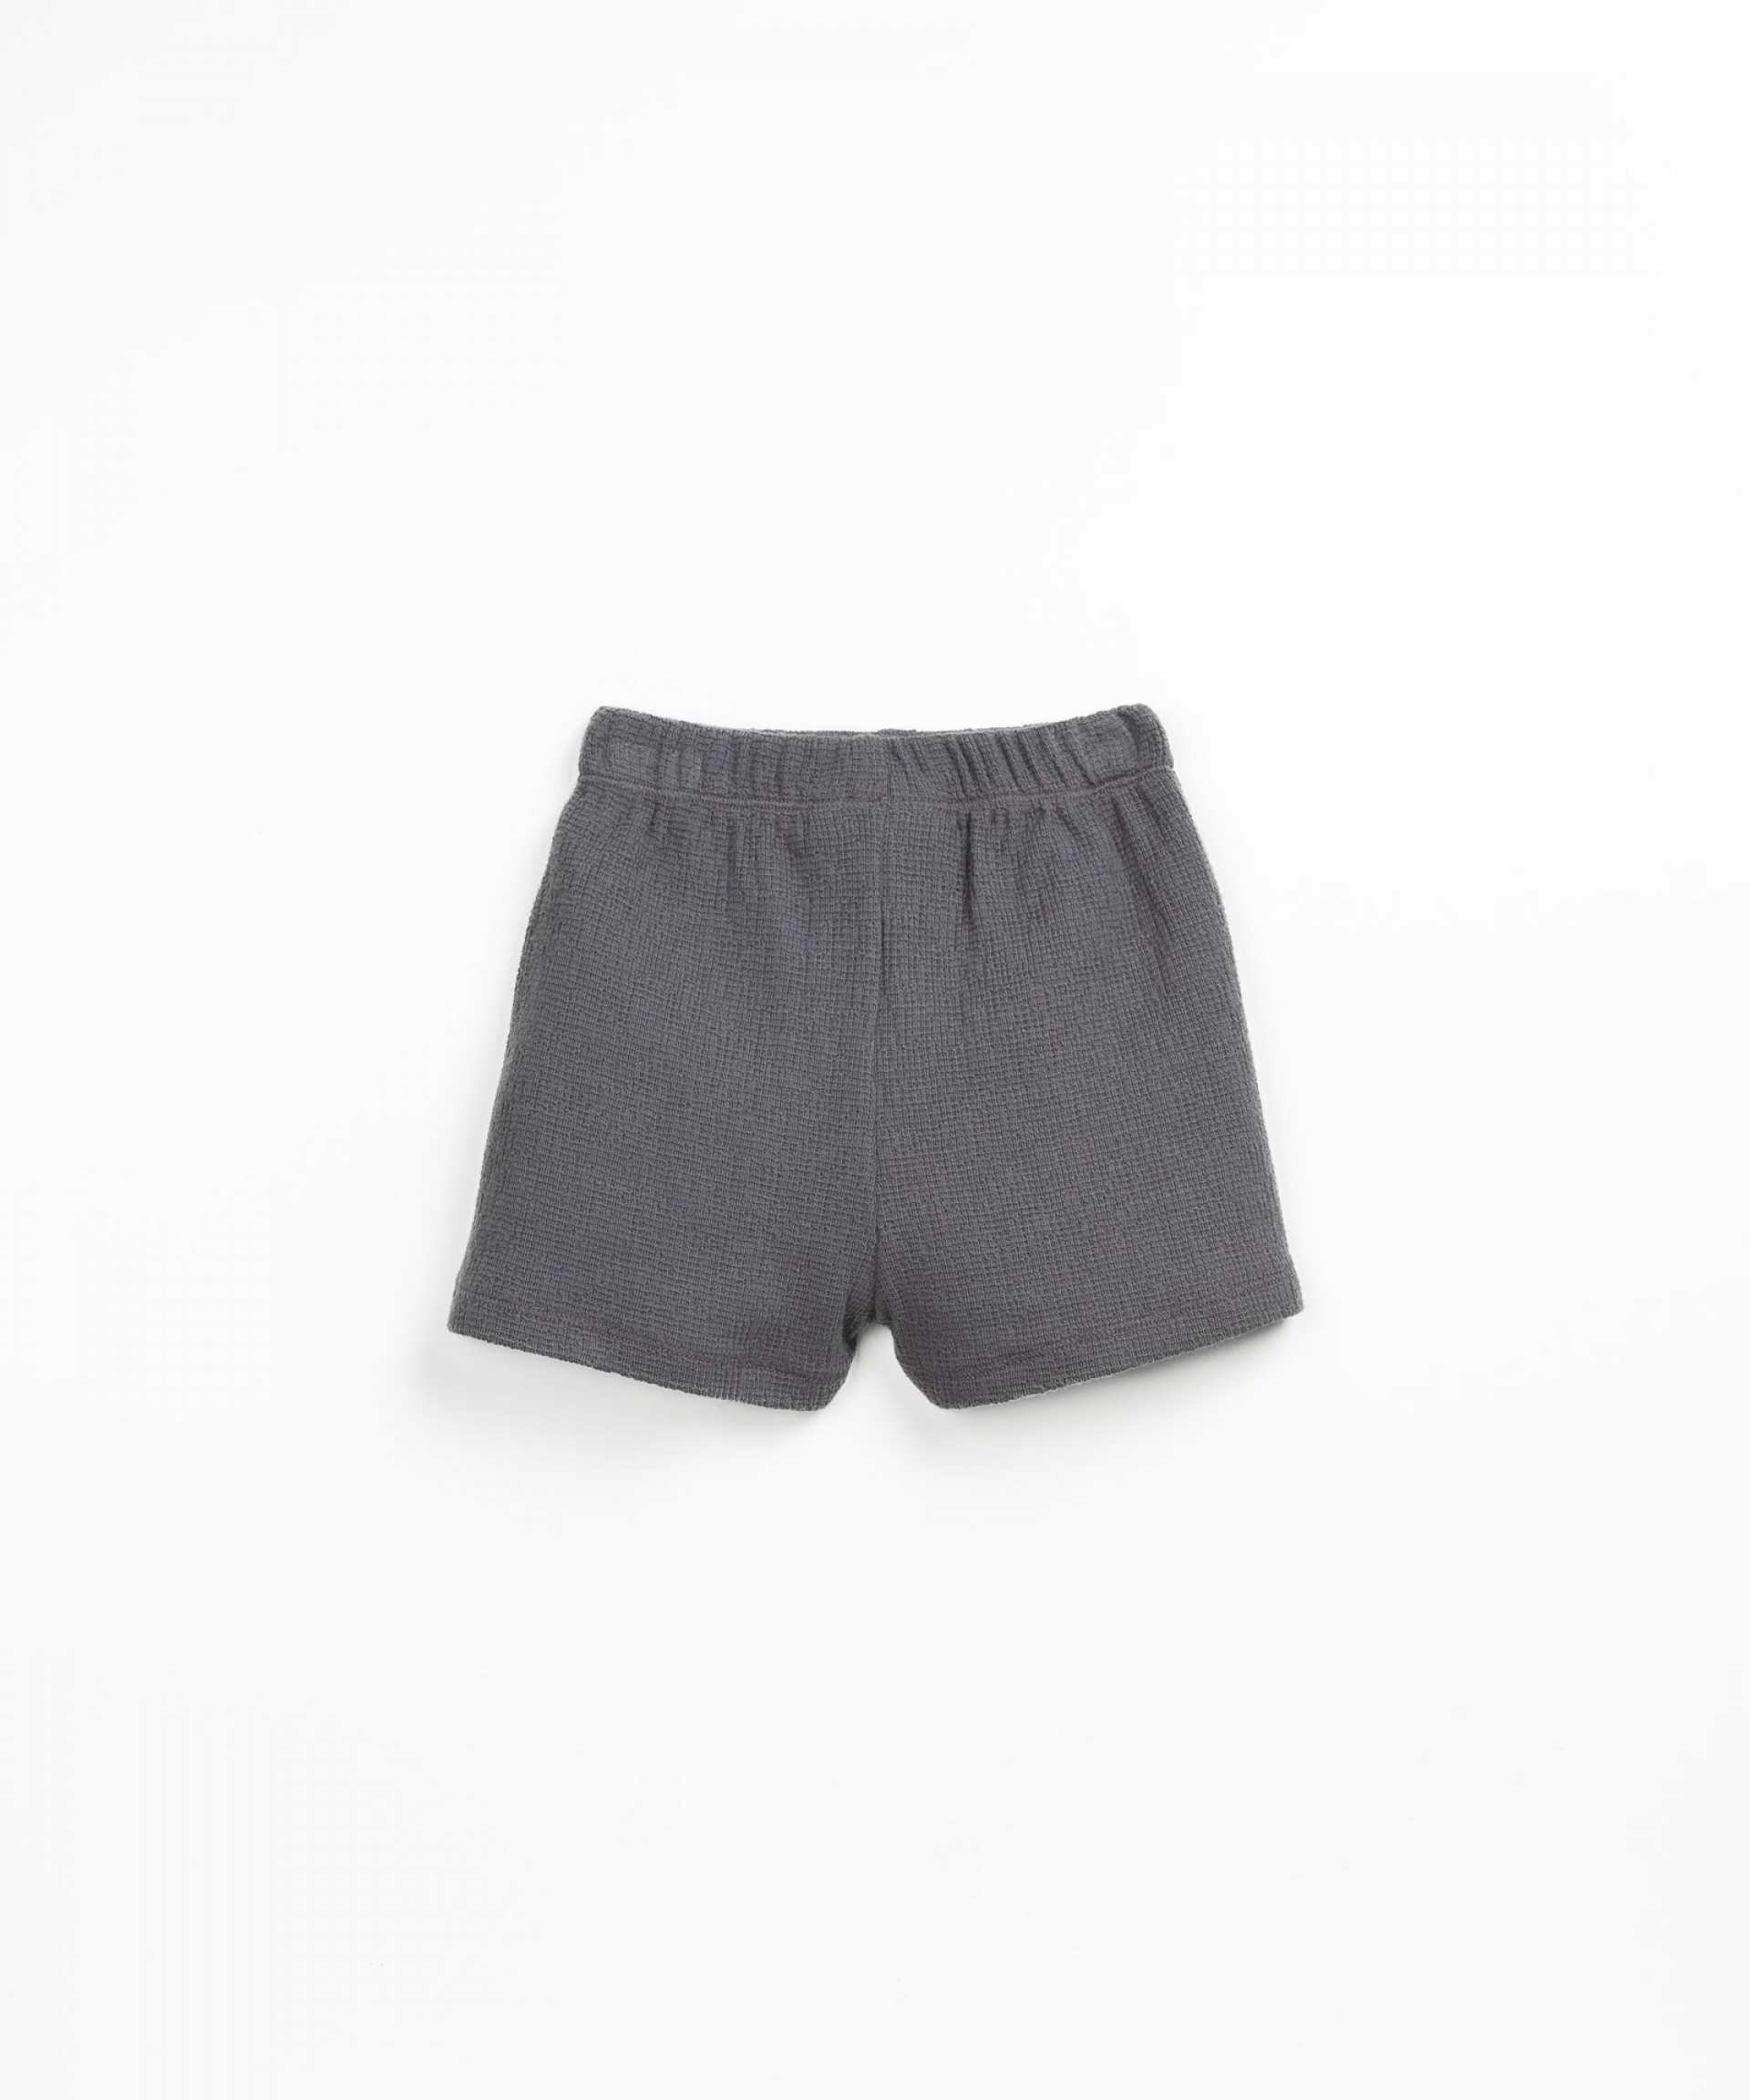 Modal shorts | Textile Art